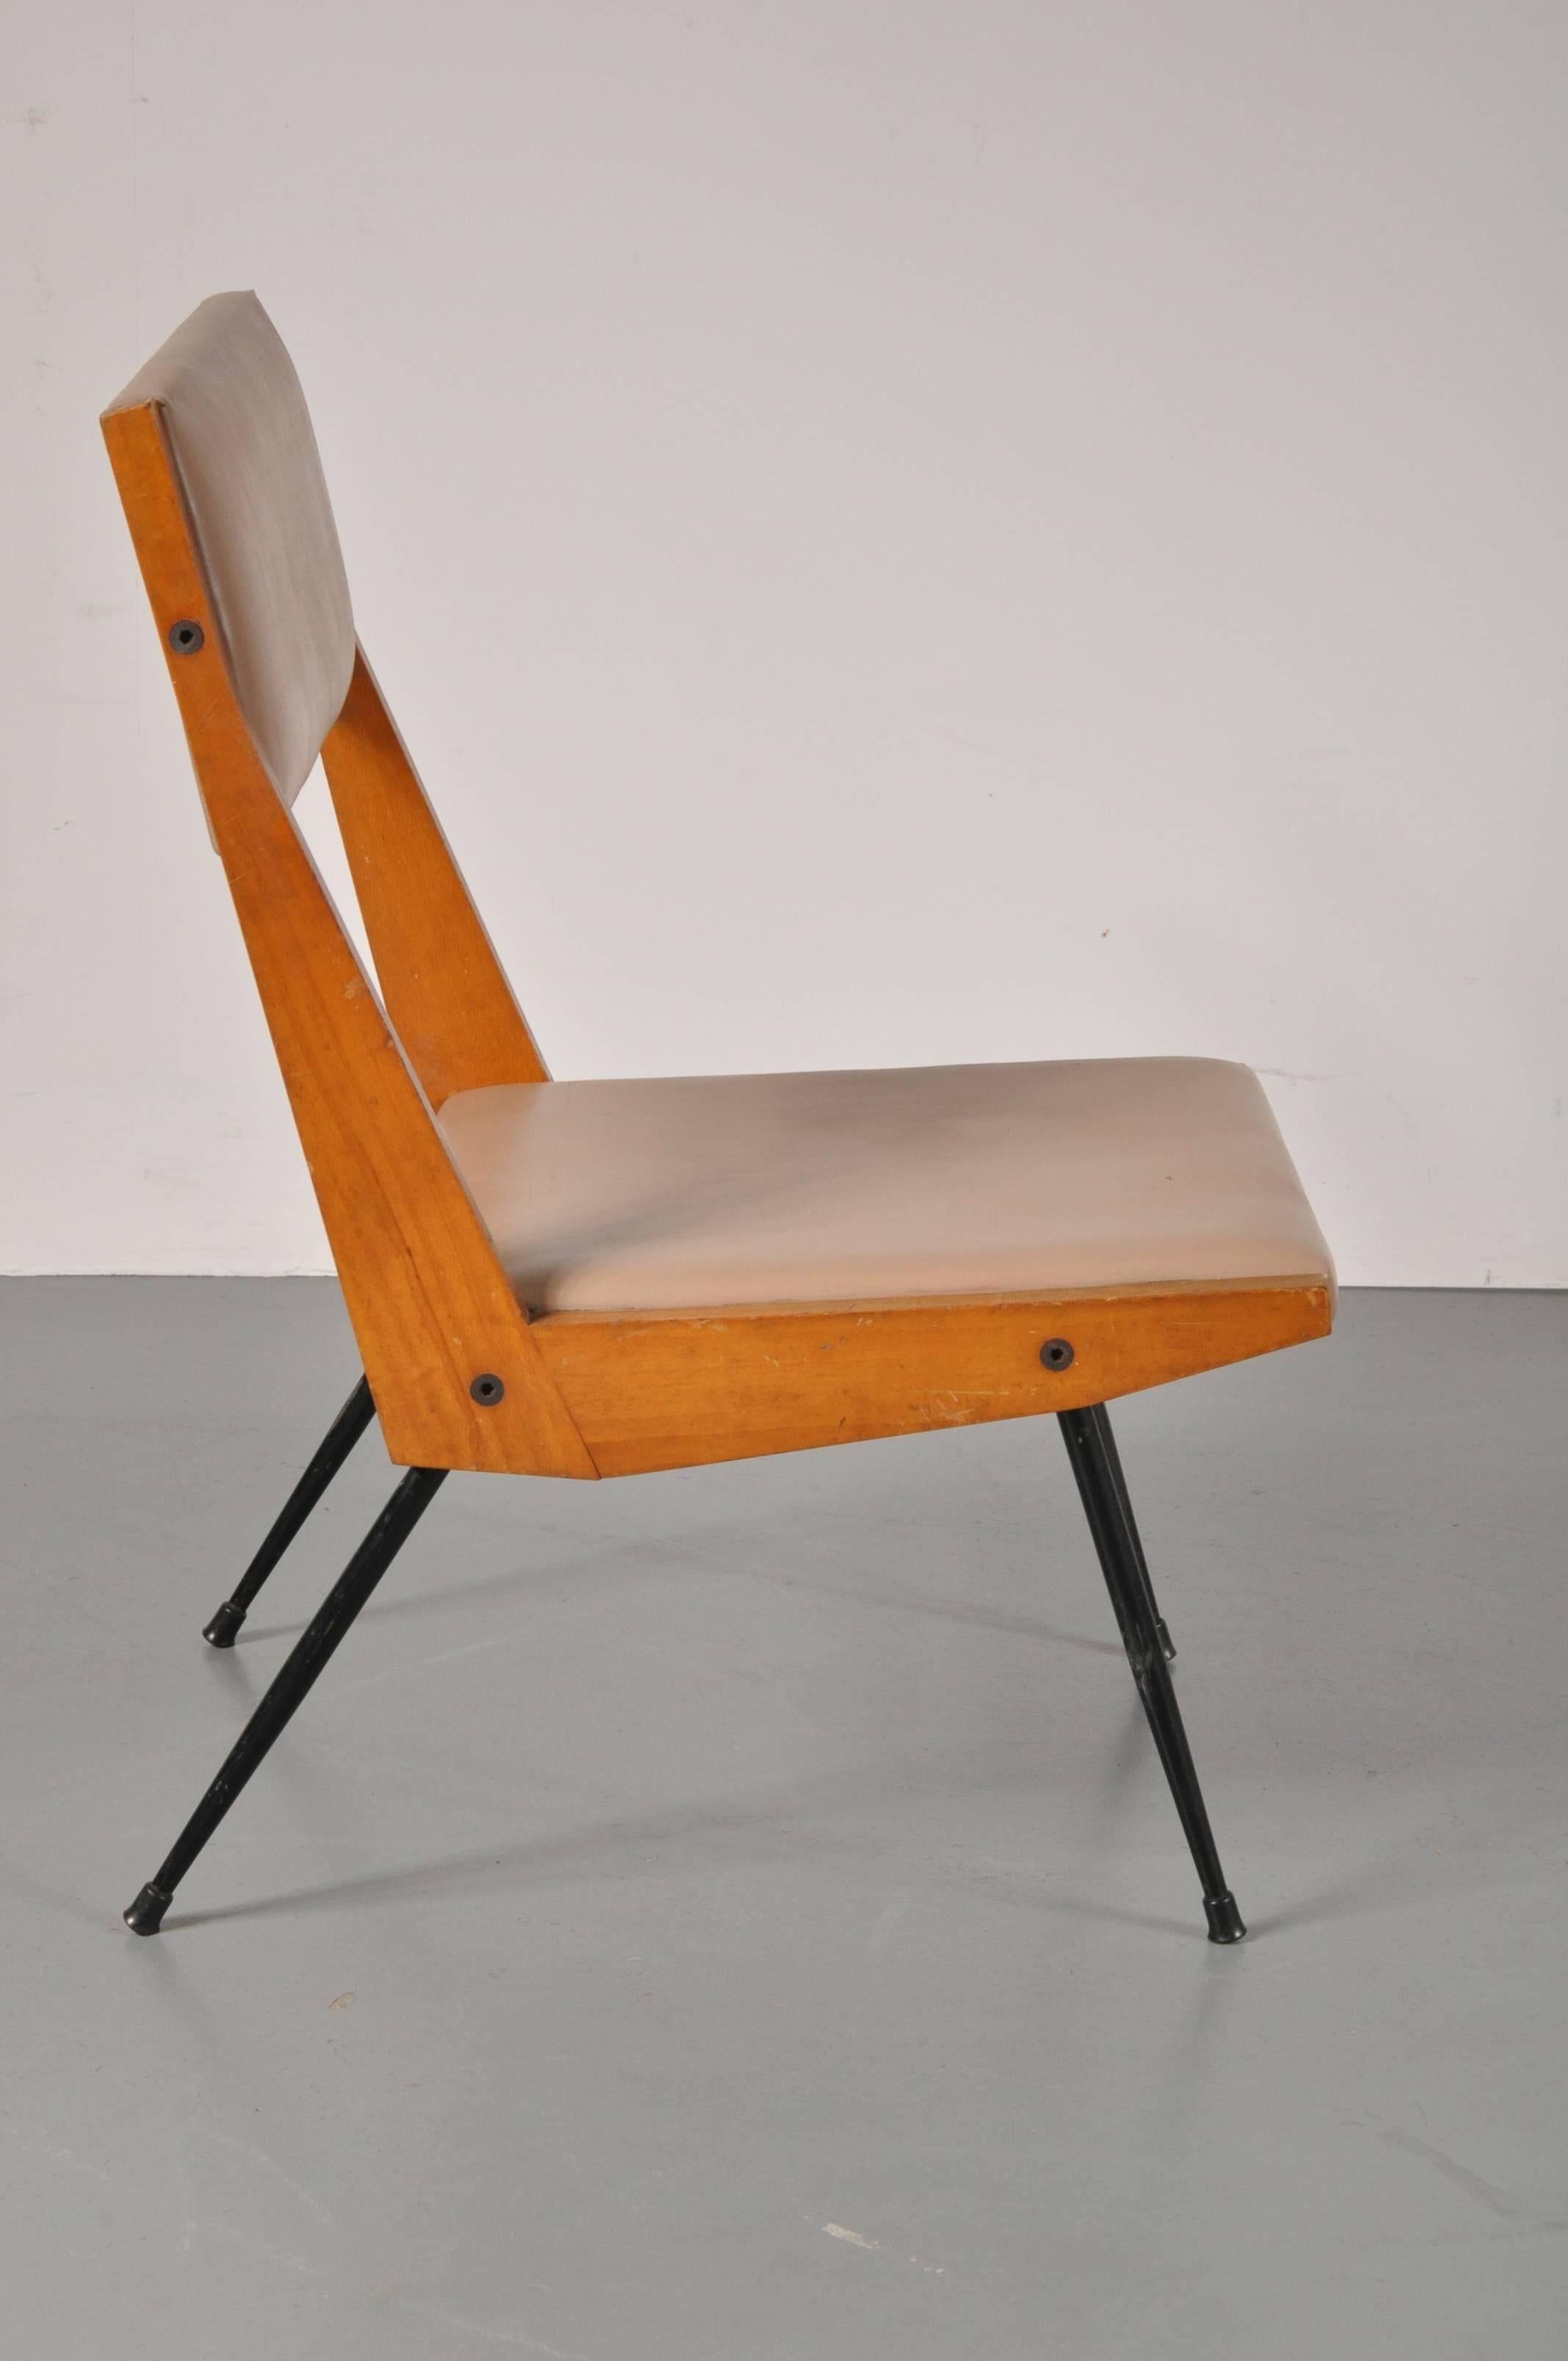 Ein einzigartiger Sessel, der Carlo di Carli zugeschrieben wird, hergestellt in Italien, um 1950.

Bei diesem Stuhl werden die MATERIALIEN in einer sehr komplementären Weise kombiniert. Die Beine sind aus hochwertigem, schwarz lackiertem Metall,